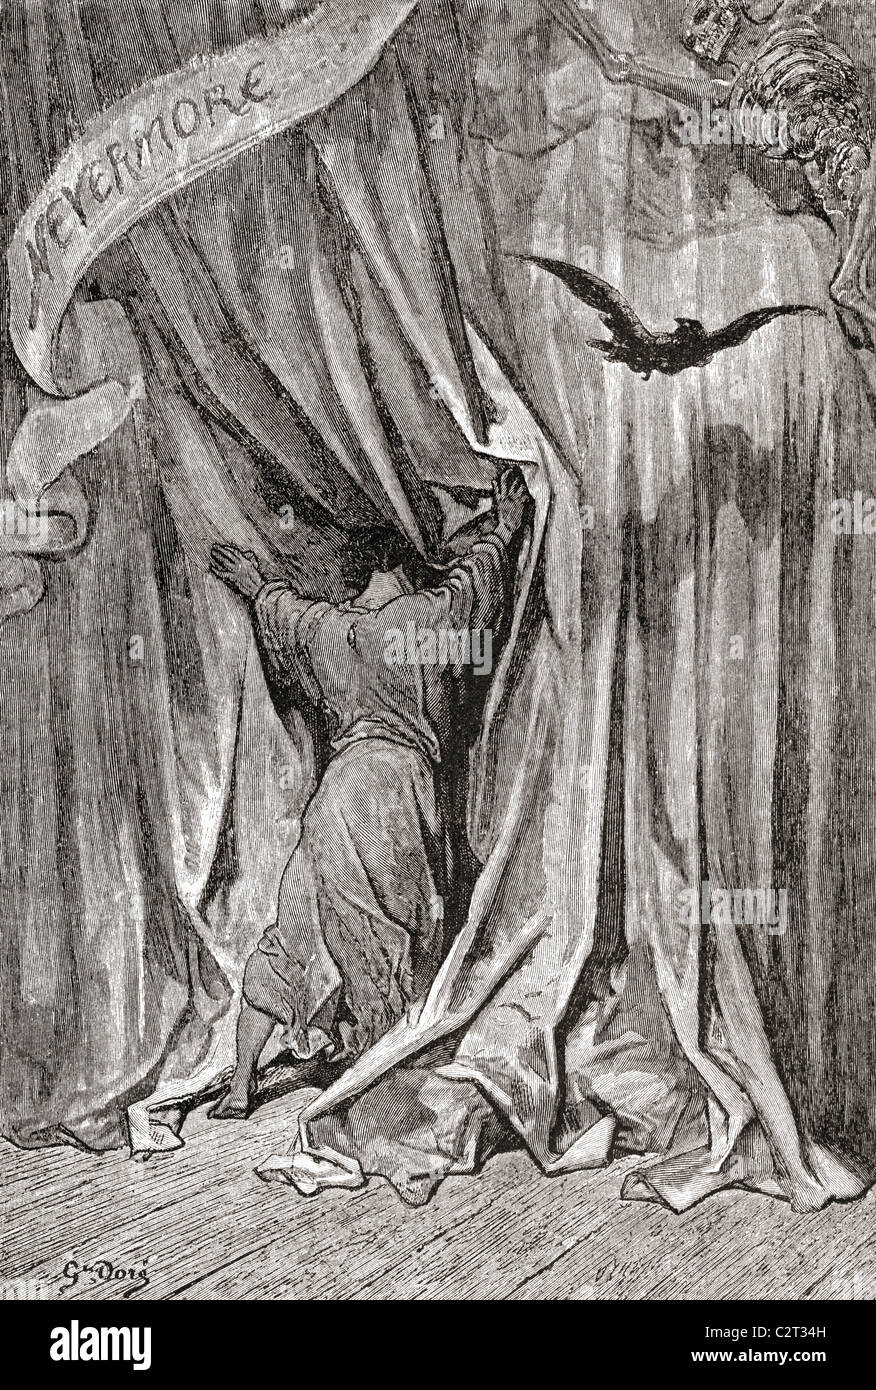 Nach Einer Zeichnung Von Gustave Dore Fur Poes Gedicht Der Rabe Stockfotografie Alamy